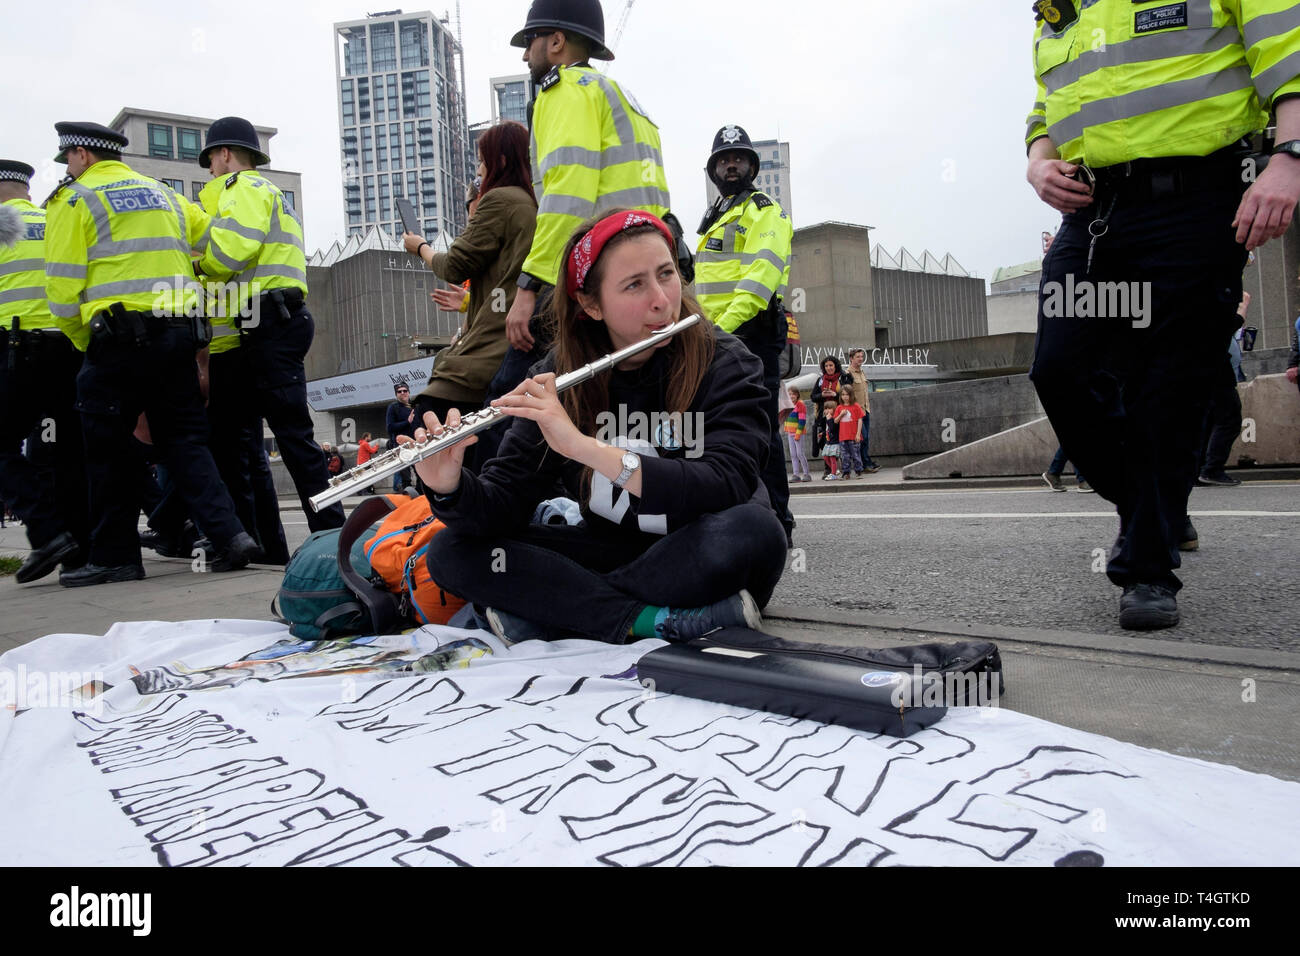 Extinction Rebellion Aktivisten Occupy Waterloo Bridge, London, April 2019: Ein junger Flötist spielt als Polizei gegen Demonstranten vorgeht. Stockfoto